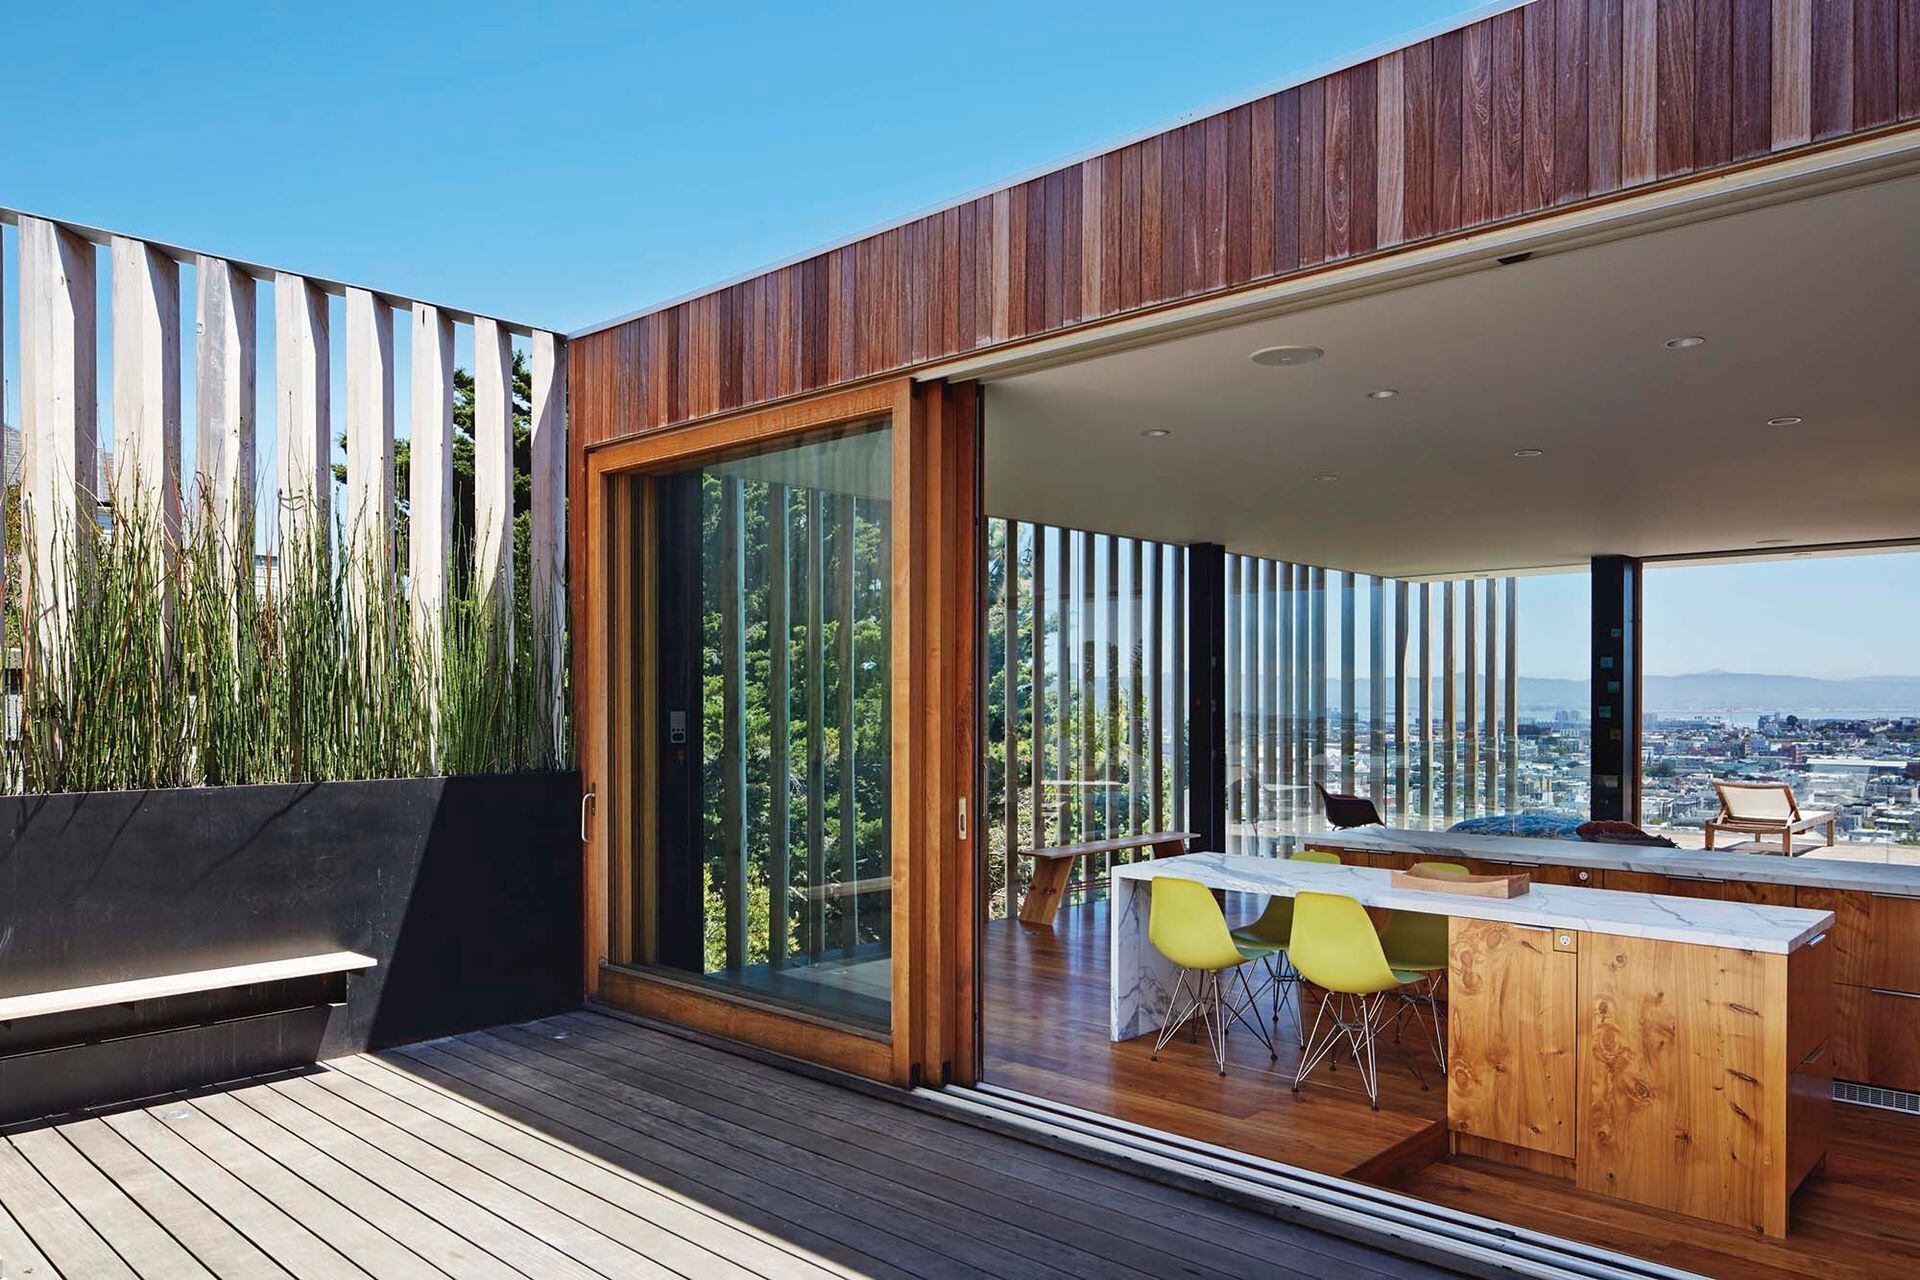 El living con comedor y cocina integrada tiene 150 m2, pero está diseñado de un modo tal que el deck se siente como una parte estructuralmente natural de él.